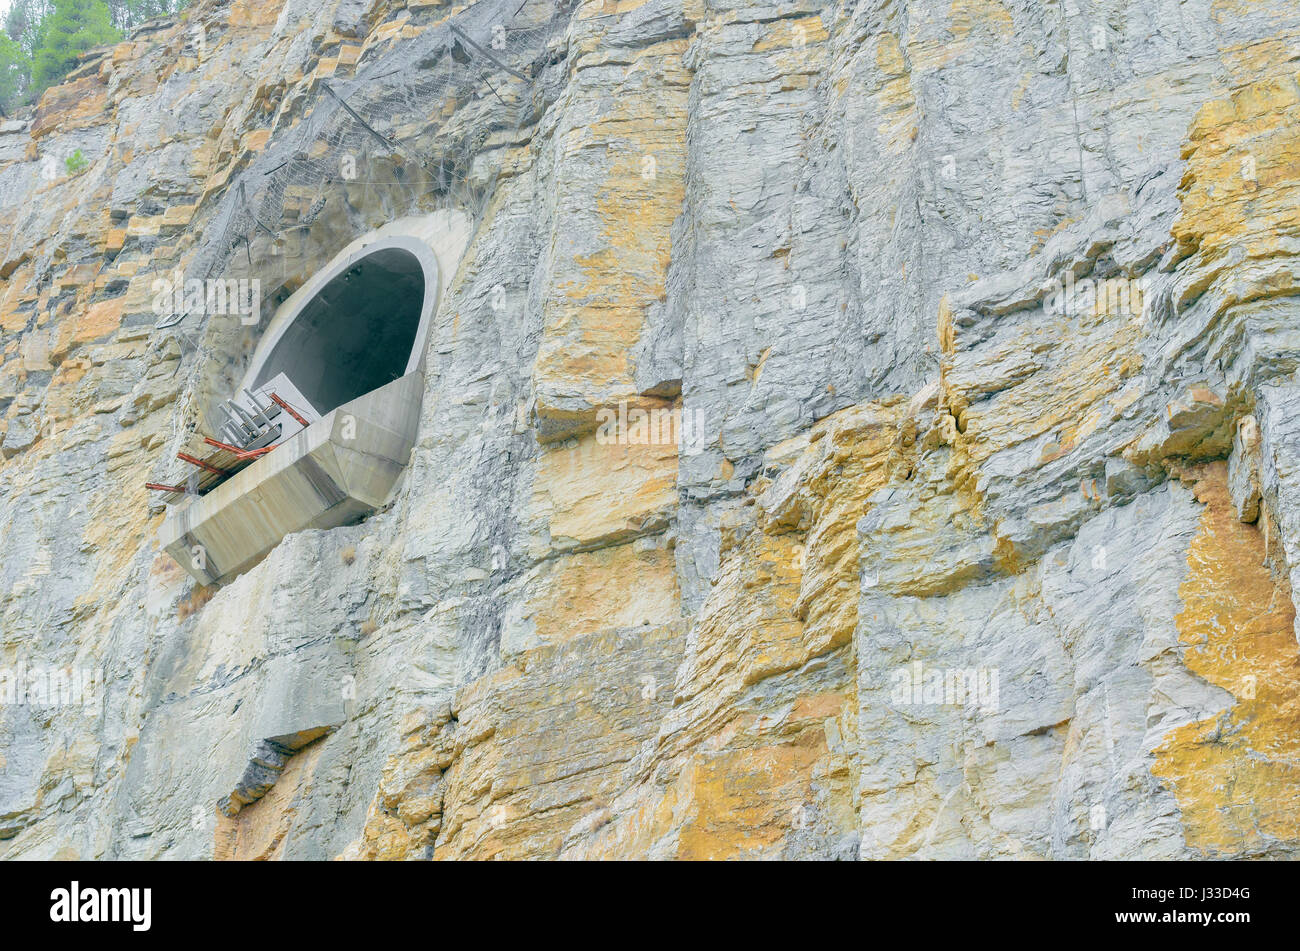 L'espagnol de l'infrastructure. Spilway de grand barrage hydroélectrique. La sortie de l'eau essence off. Mur rocheux de la roche de la montagne. Les arbres avec des feuilles vertes sur le dessus. Banque D'Images